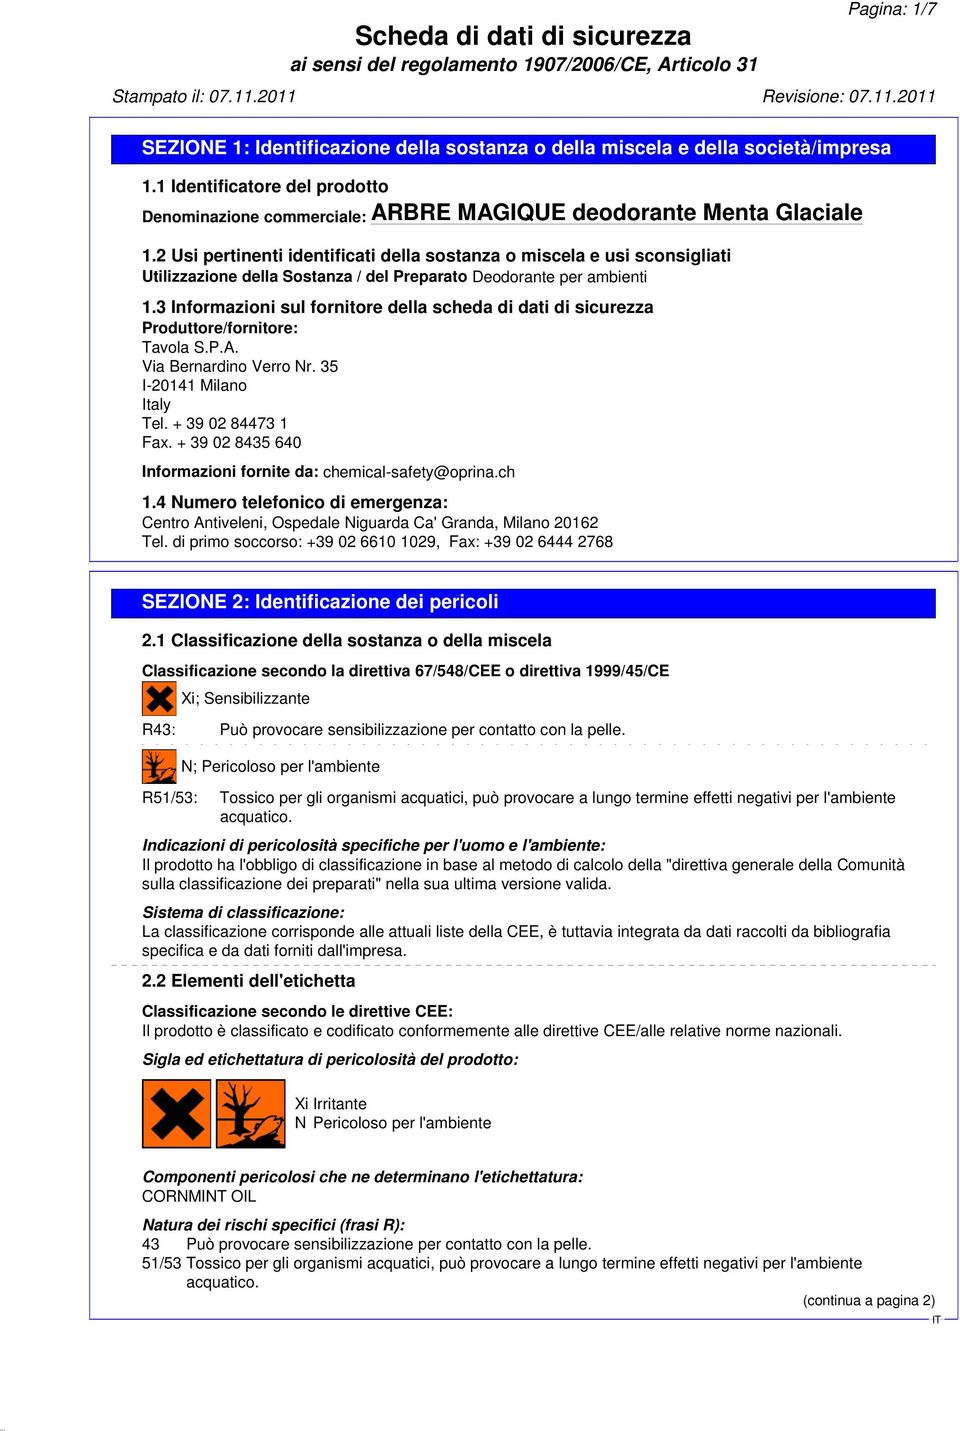 3 Informazioni sul fornitore della scheda di dati di sicurezza Produttore/fornitore: Tavola S.P.A. Via Bernardino Verro Nr. 35 I-20141 Milano Italy Tel. + 39 02 84473 1 Fax.